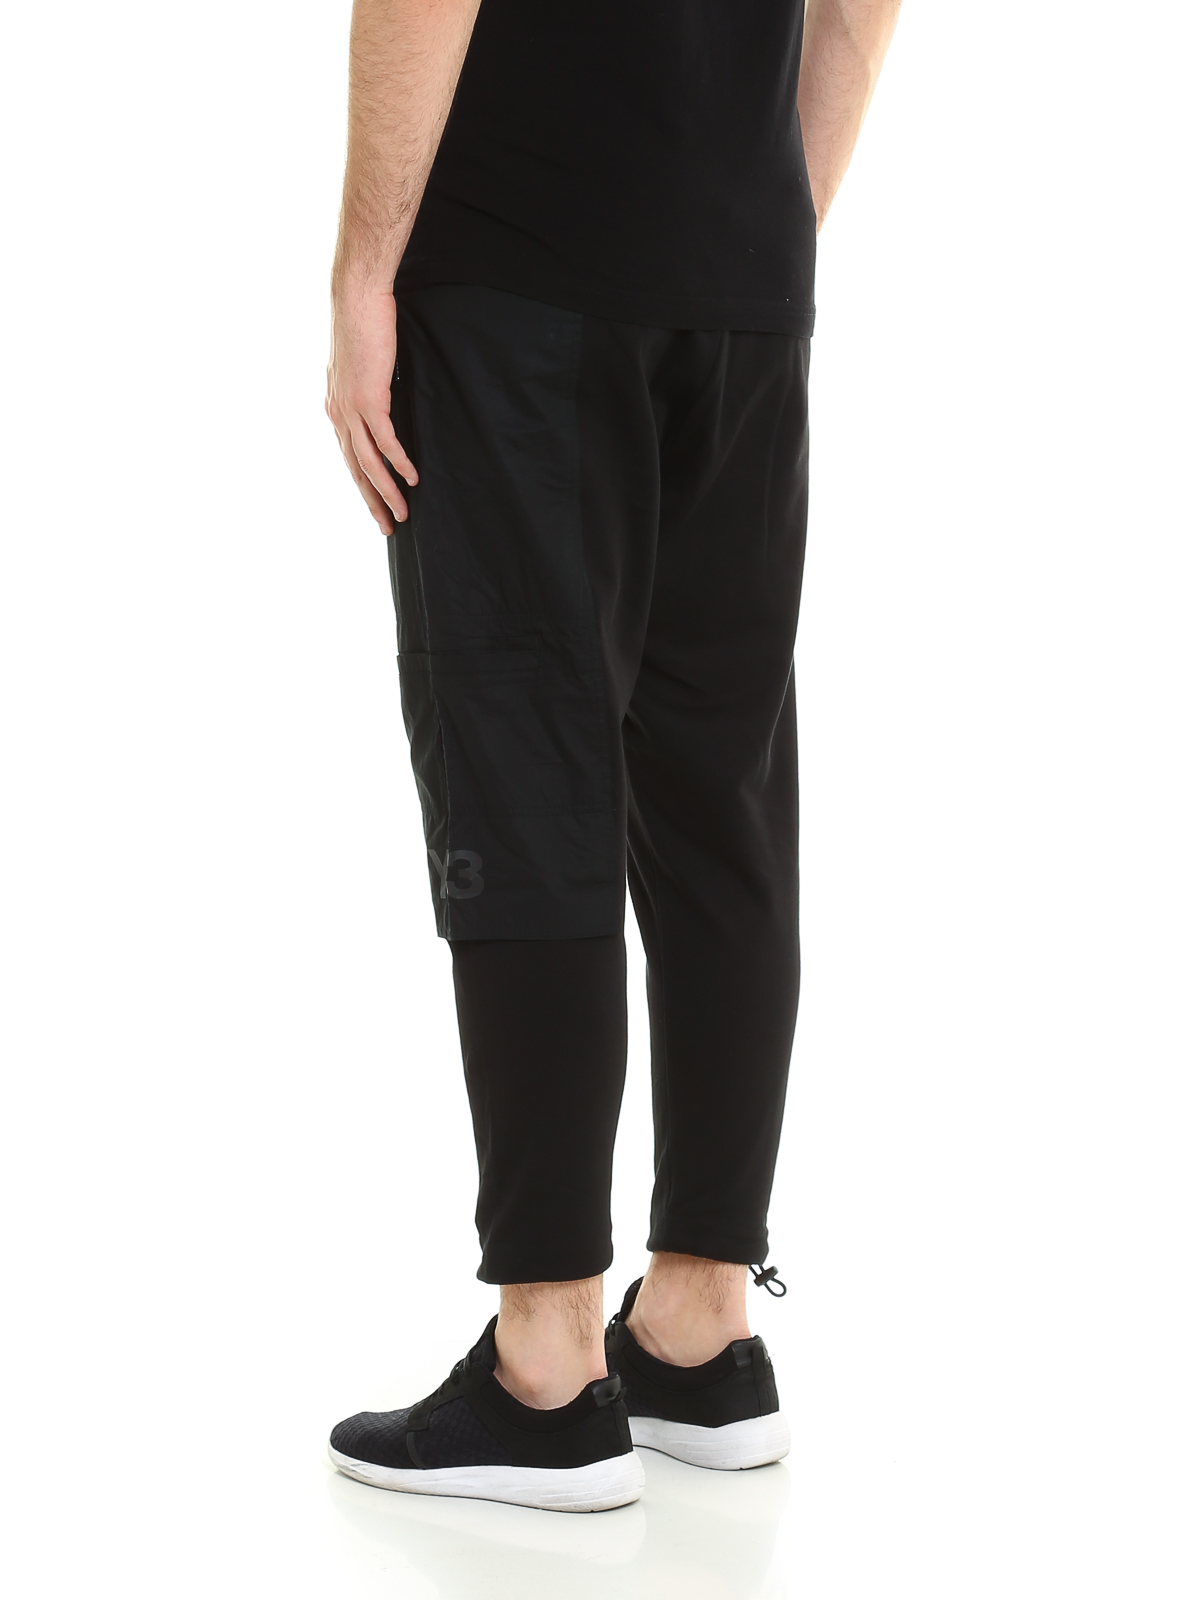 Perla brazo Conversacional Pantalones deportivos Adidas Y-3 - Pantalón Chándal Negro Para Hombre -  BS3504